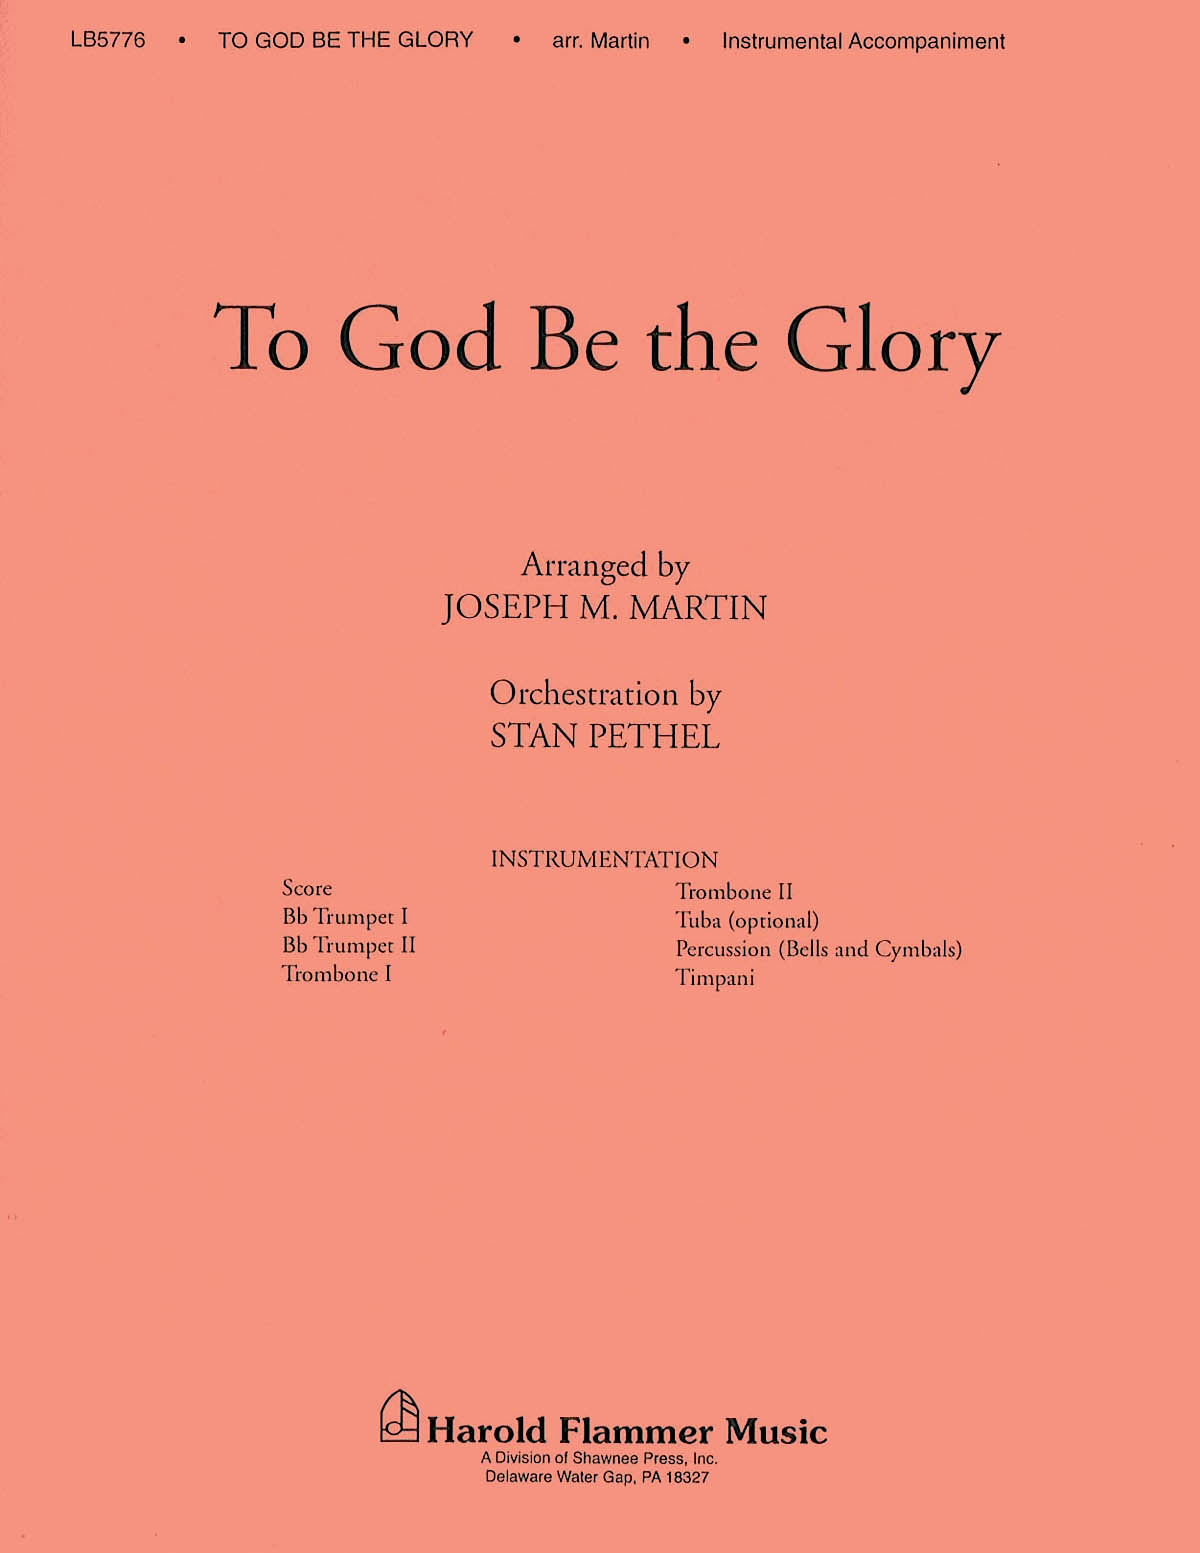 Fanny J. Crosby William Howard Doane: To God Be the Glory: Part